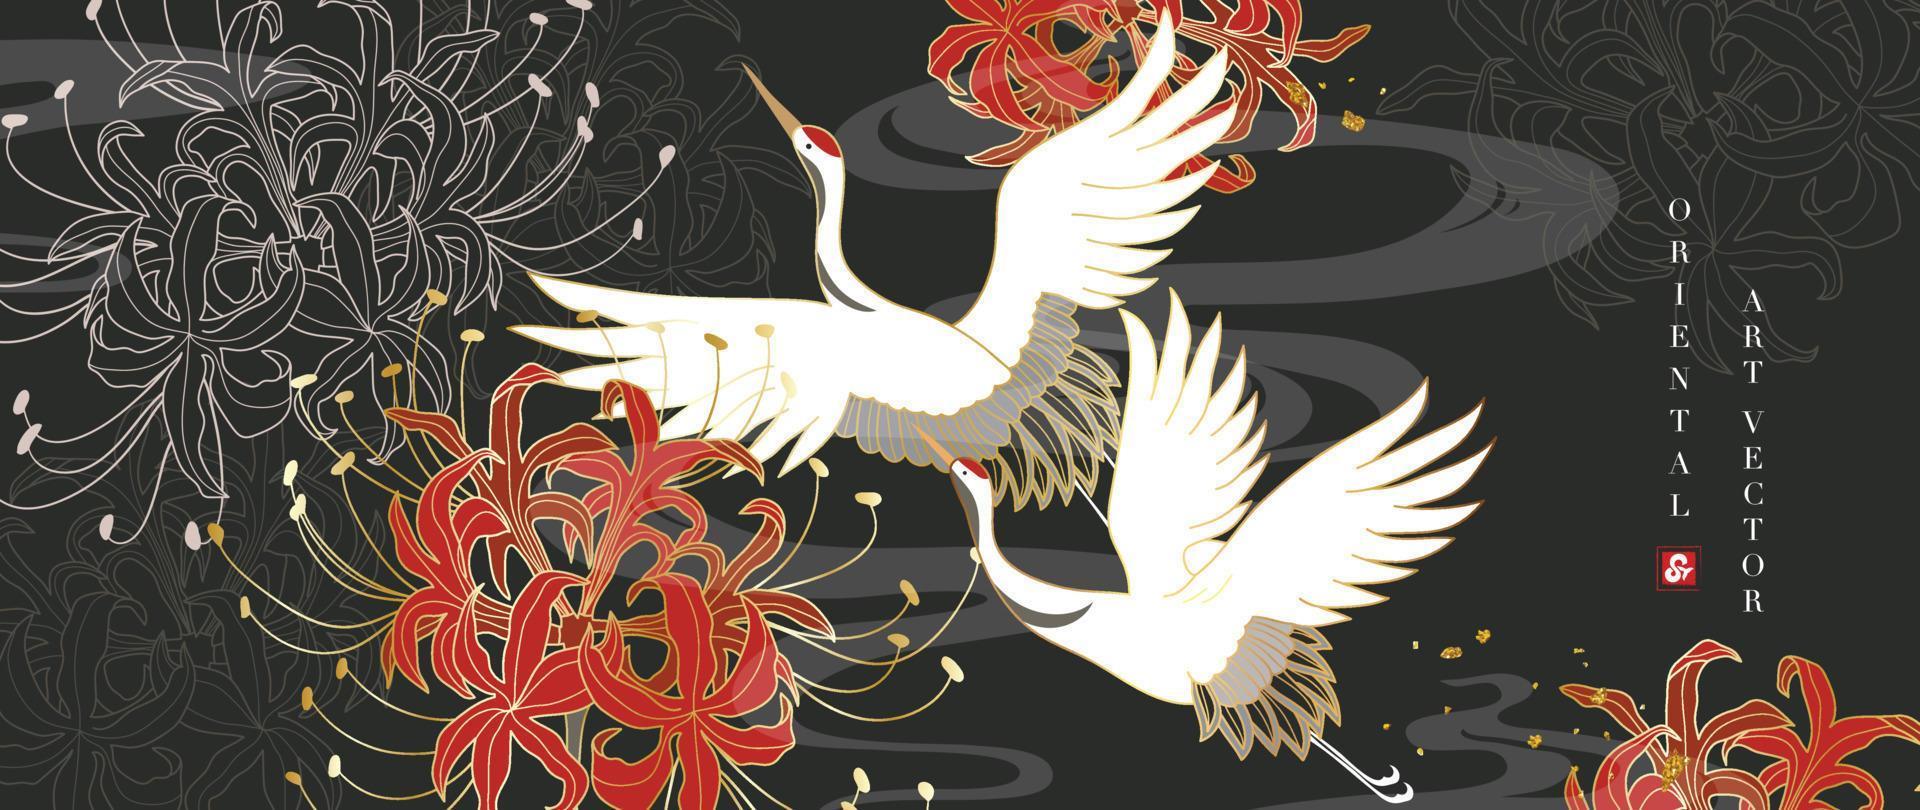 vecteur de fond de style oriental or de luxe. conception de motif de papier peint chinois et japonais d'élégants oiseaux et fleurs de grue avec texture de ligne d'or. illustration de conception pour la décoration, décoration murale.